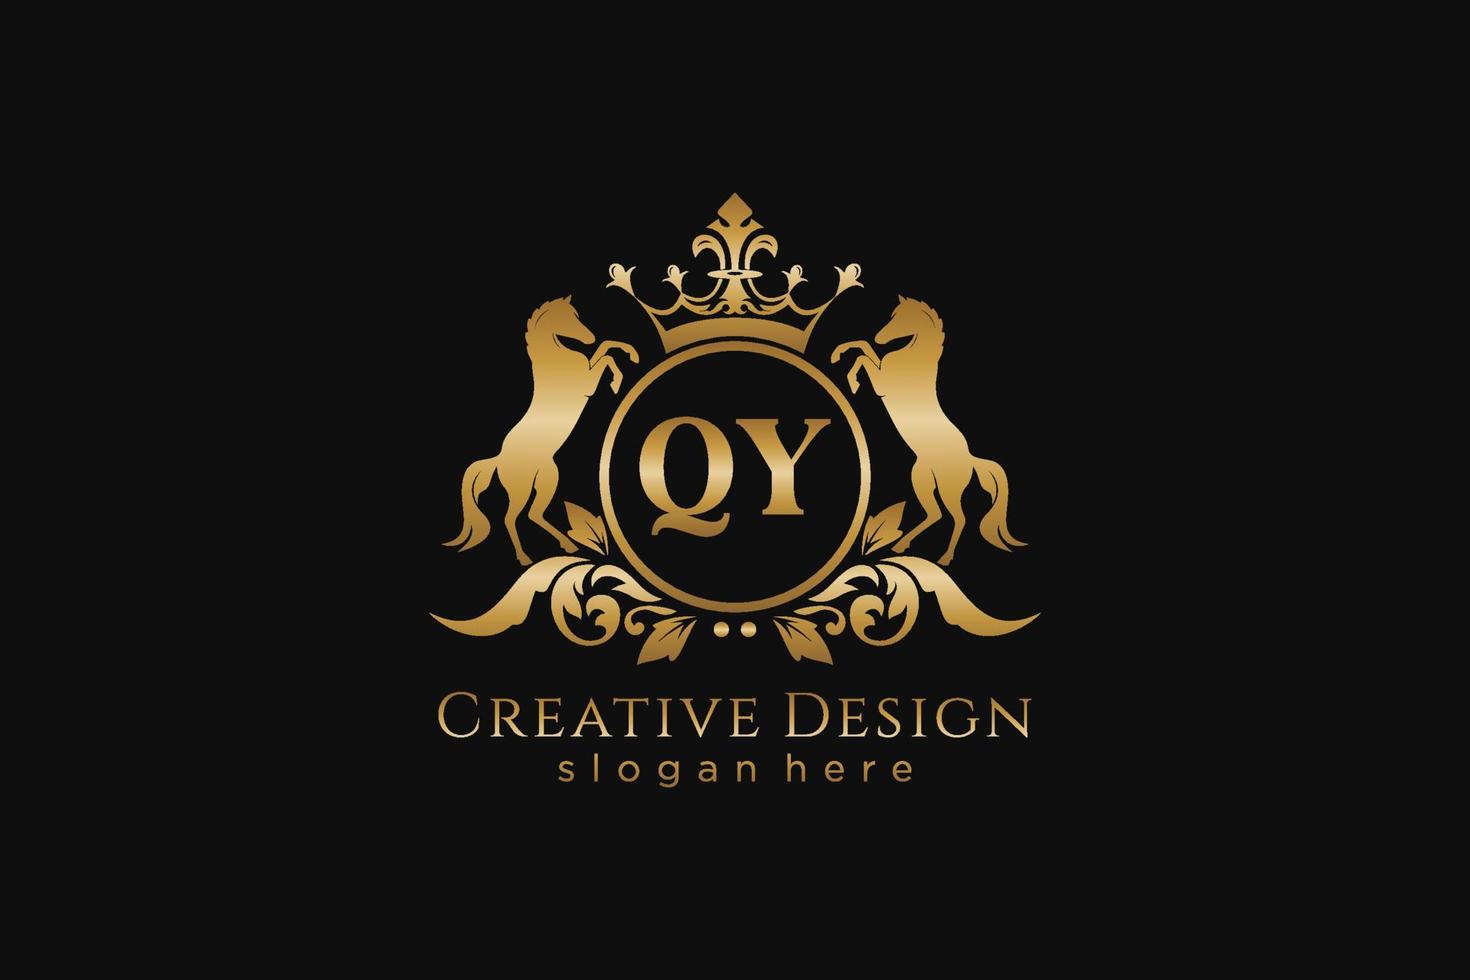 crista dourada retro qy inicial com círculo e dois cavalos, modelo de crachá com pergaminhos e coroa real - perfeito para projetos de marca luxuosos vetor